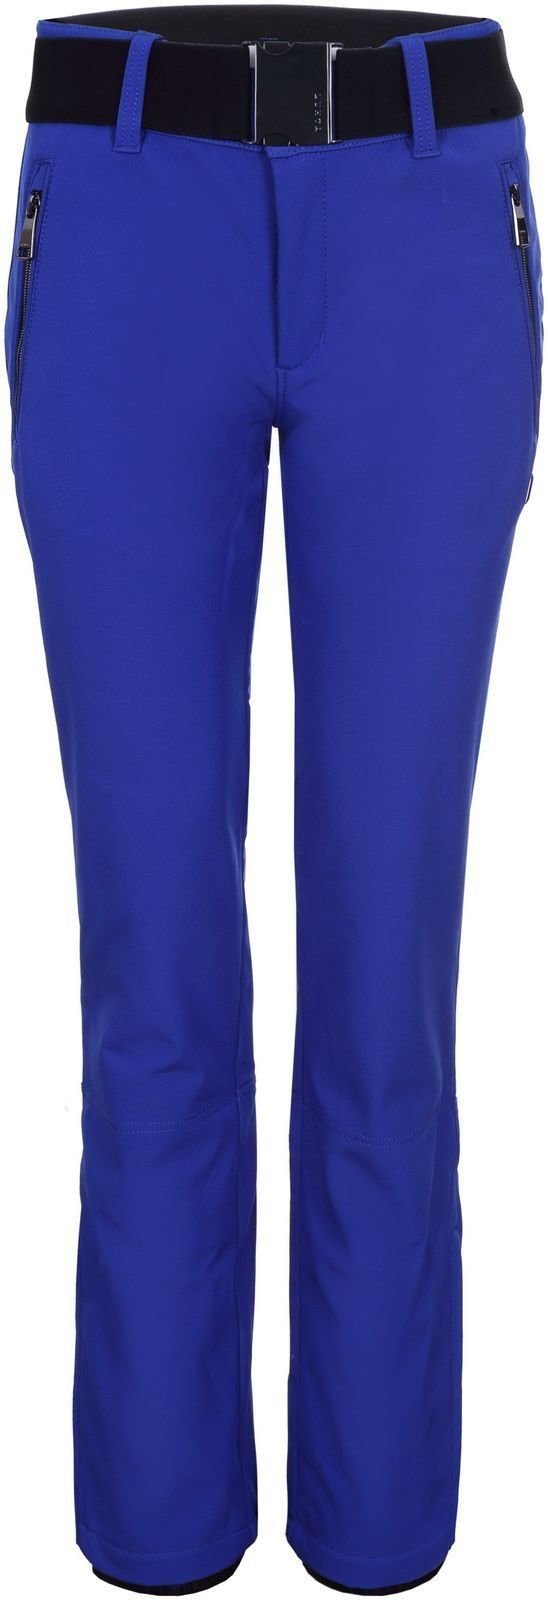 Ski Pants Luhta Joentaus Womens Ski Pants Royal Blue 38